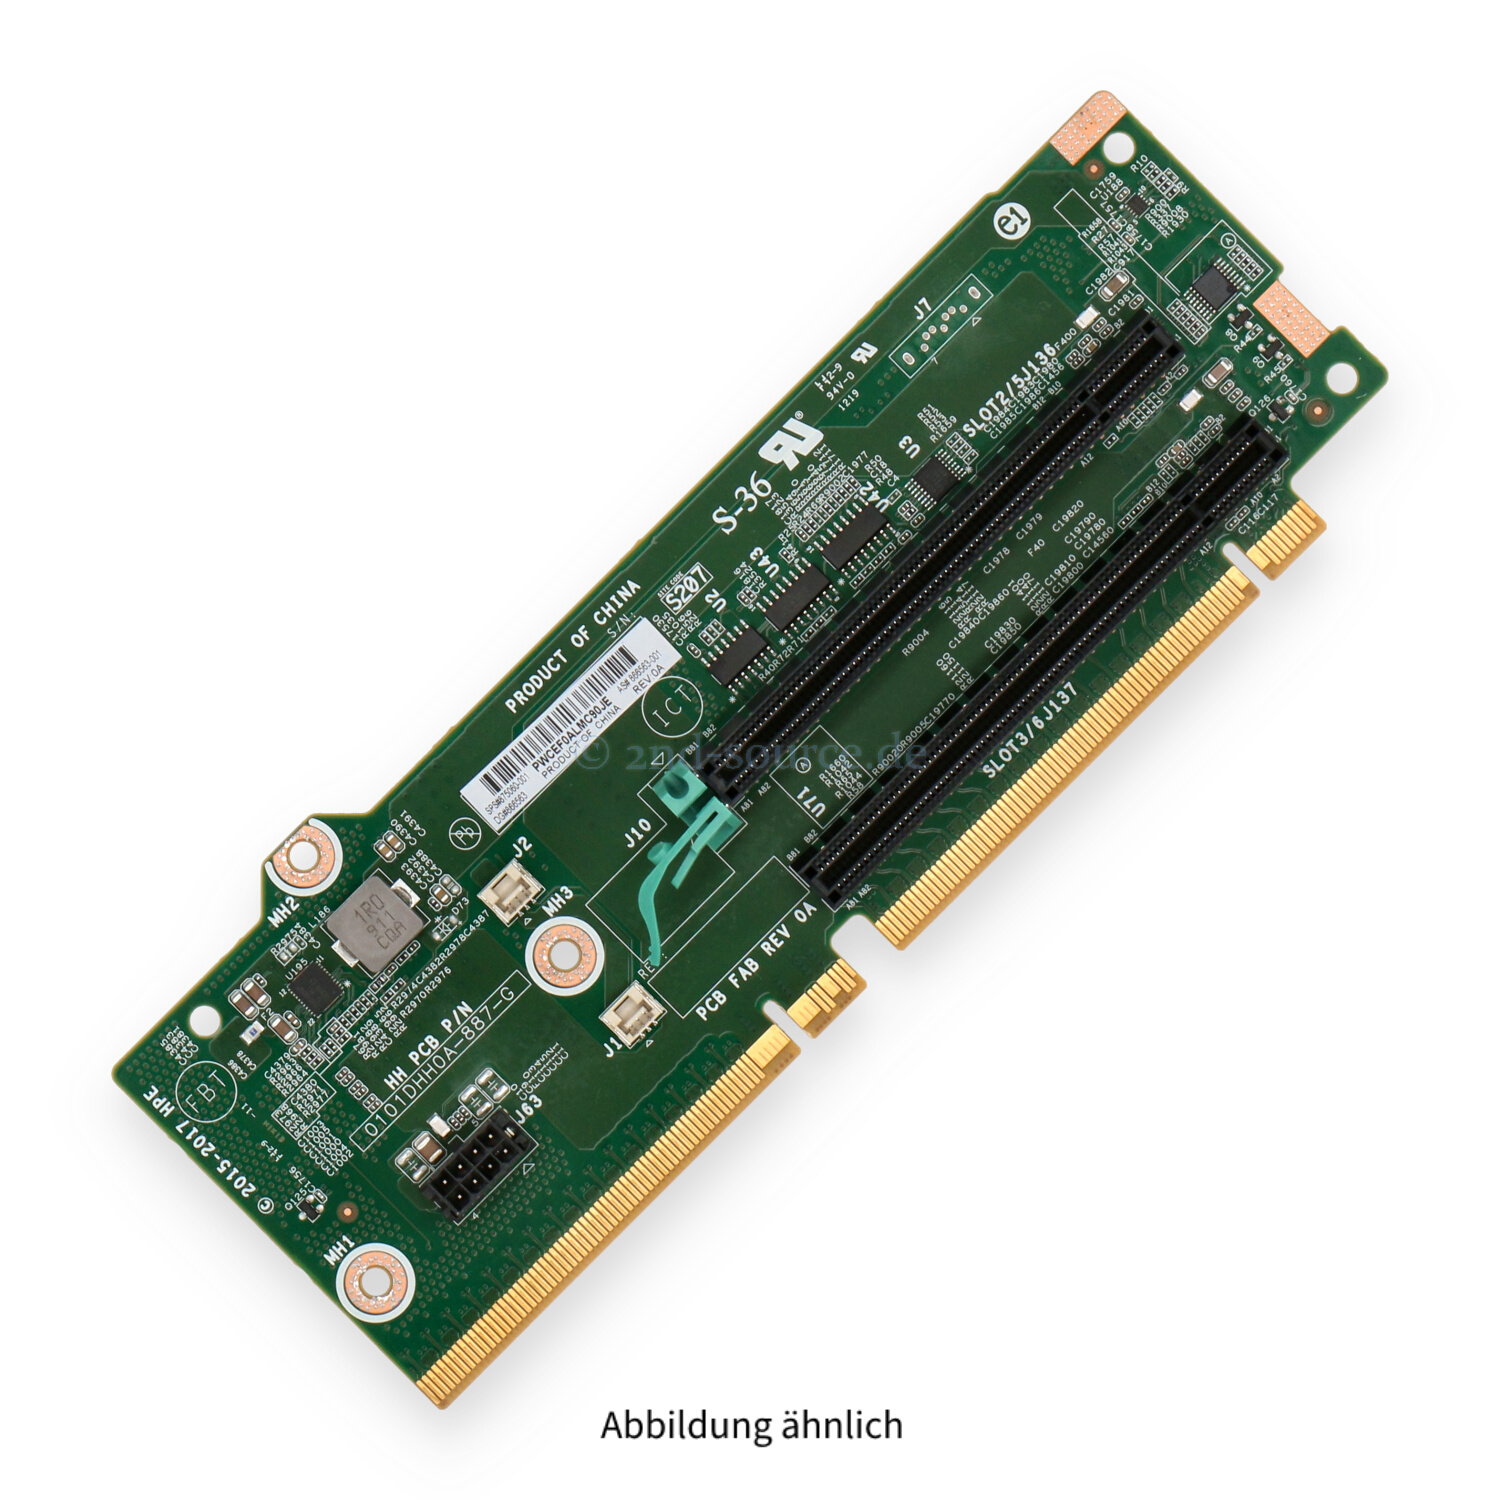 HPE Slot 2/3 2xPCIe x16 GPU Riser Board DL380 Gen10 875060-001 866563-001